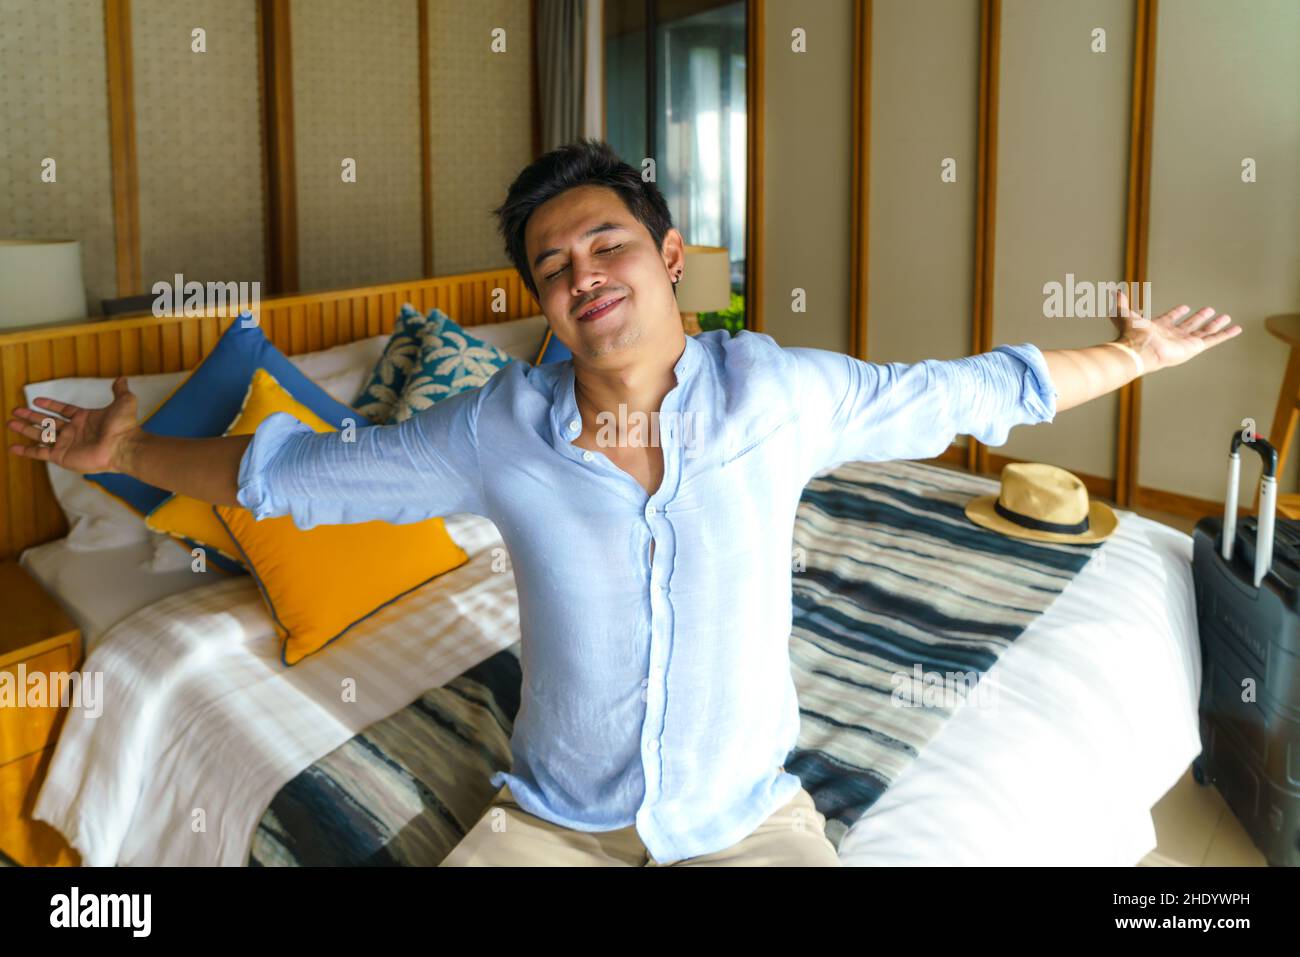 Ein asiatischer Mann mit Koffer legte sich nach seiner Ankunft während seiner Sommerurlaubsreise in seinem Zimmer im Resort auf ein Bett. Stockfoto